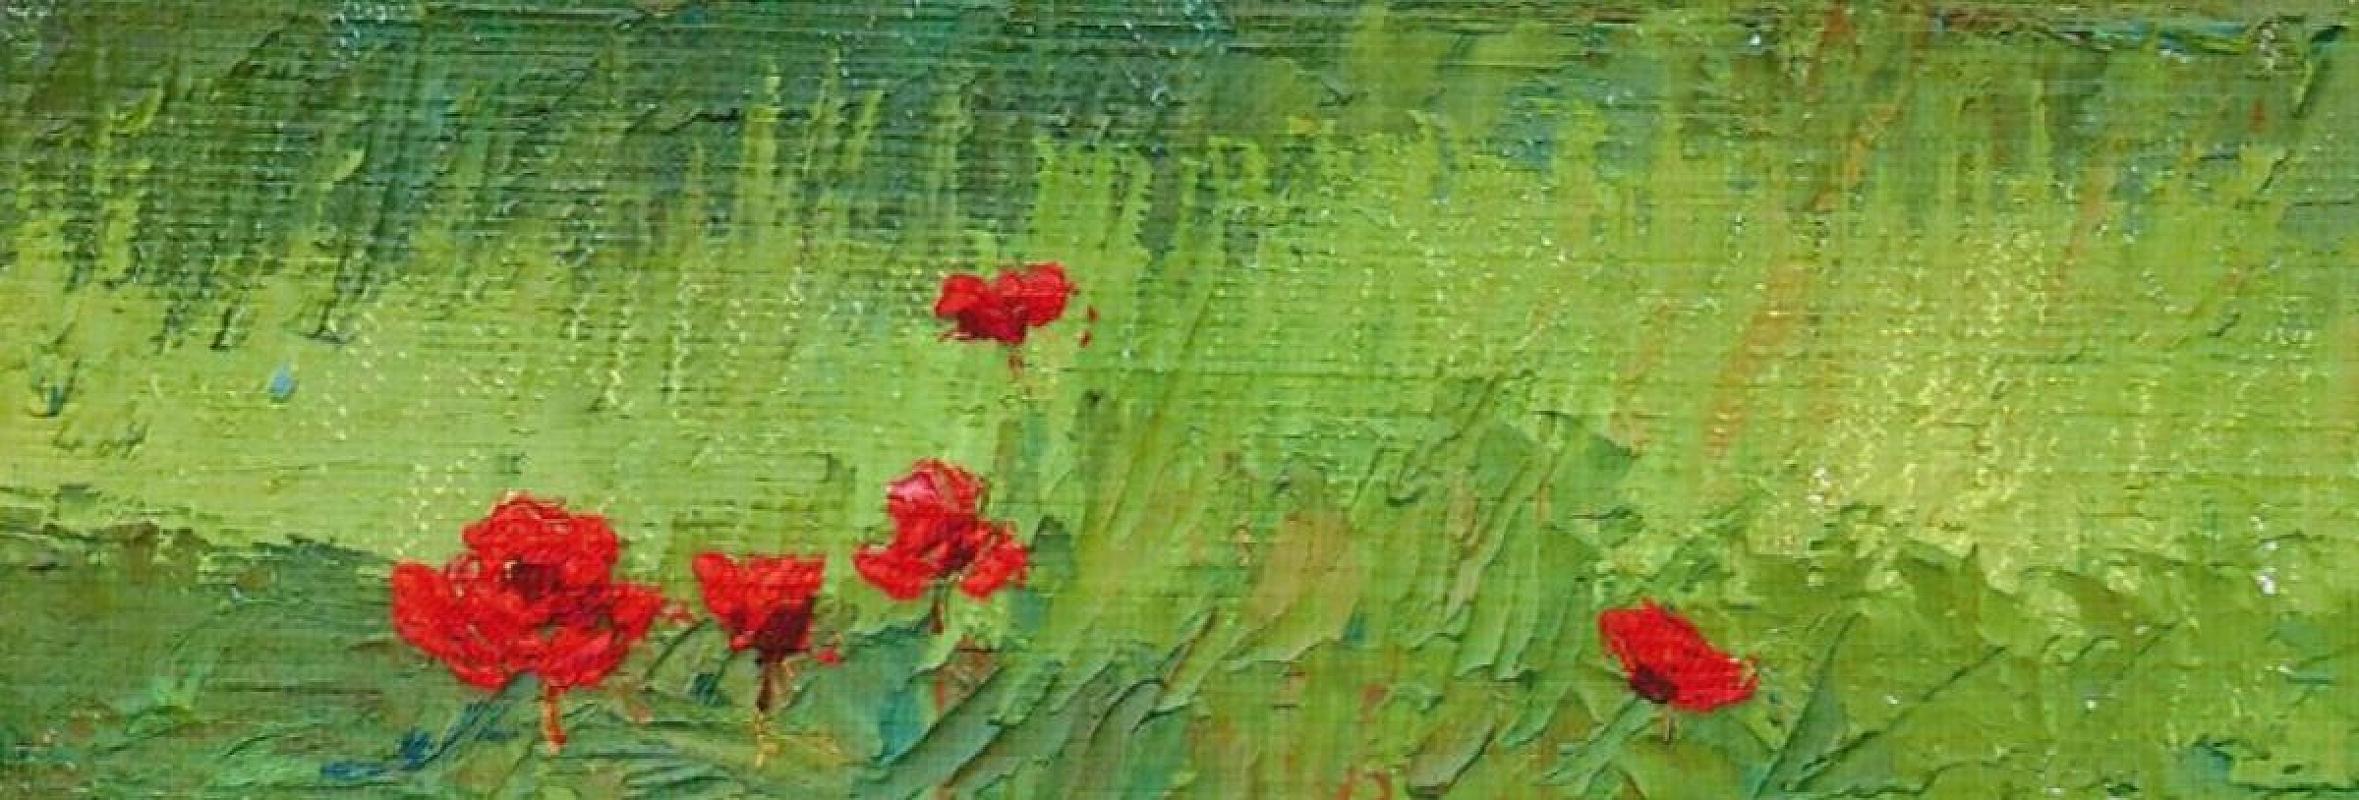 Landscape Painting Nelson H. White - Le terrain de coquelicot italien, style individuel, extérieur et nature, impressionnisme